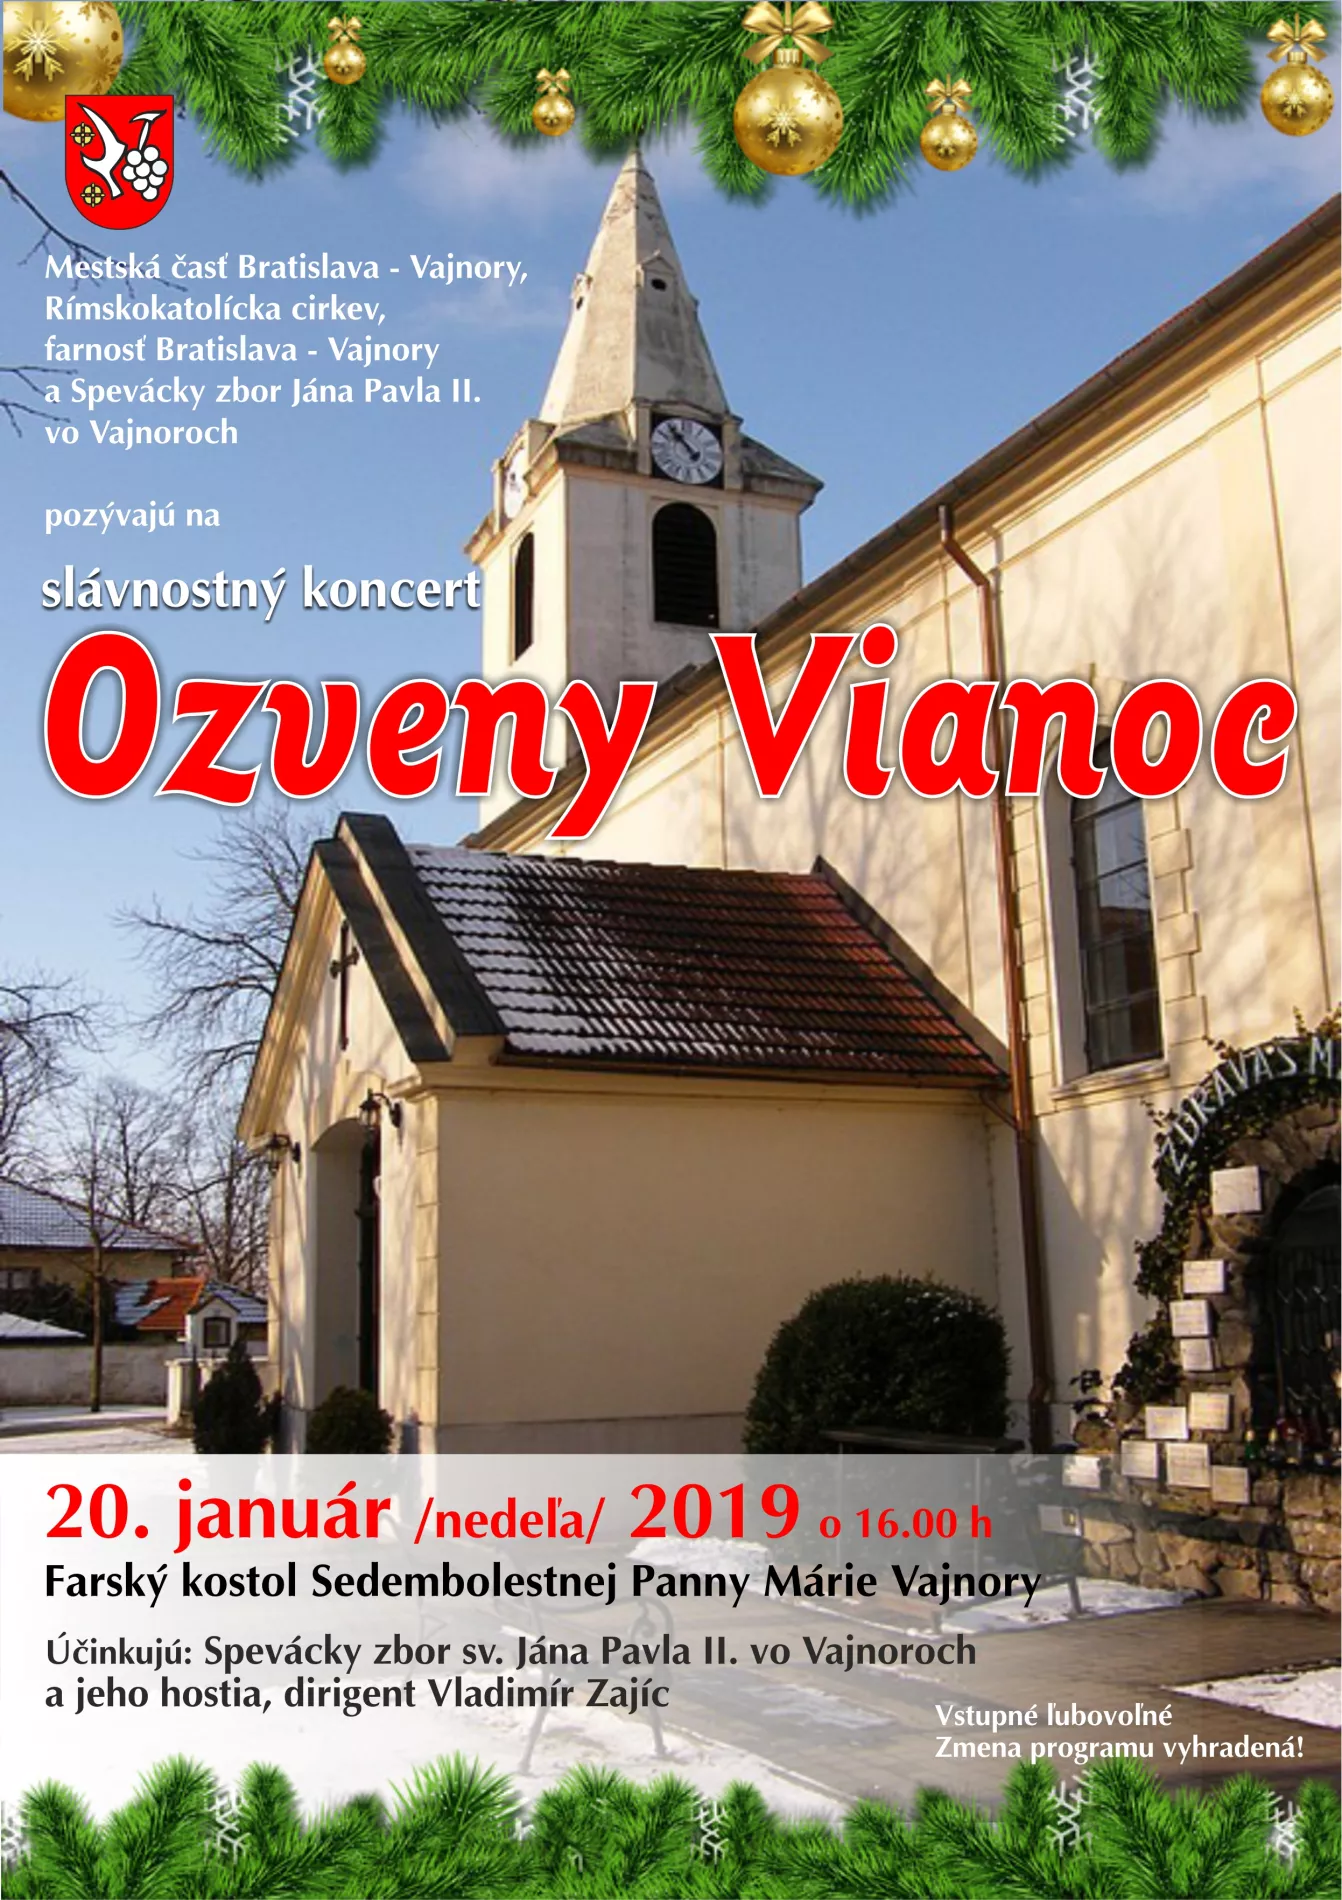 Koncert "Ozveny Vianoc" 20. január 2019